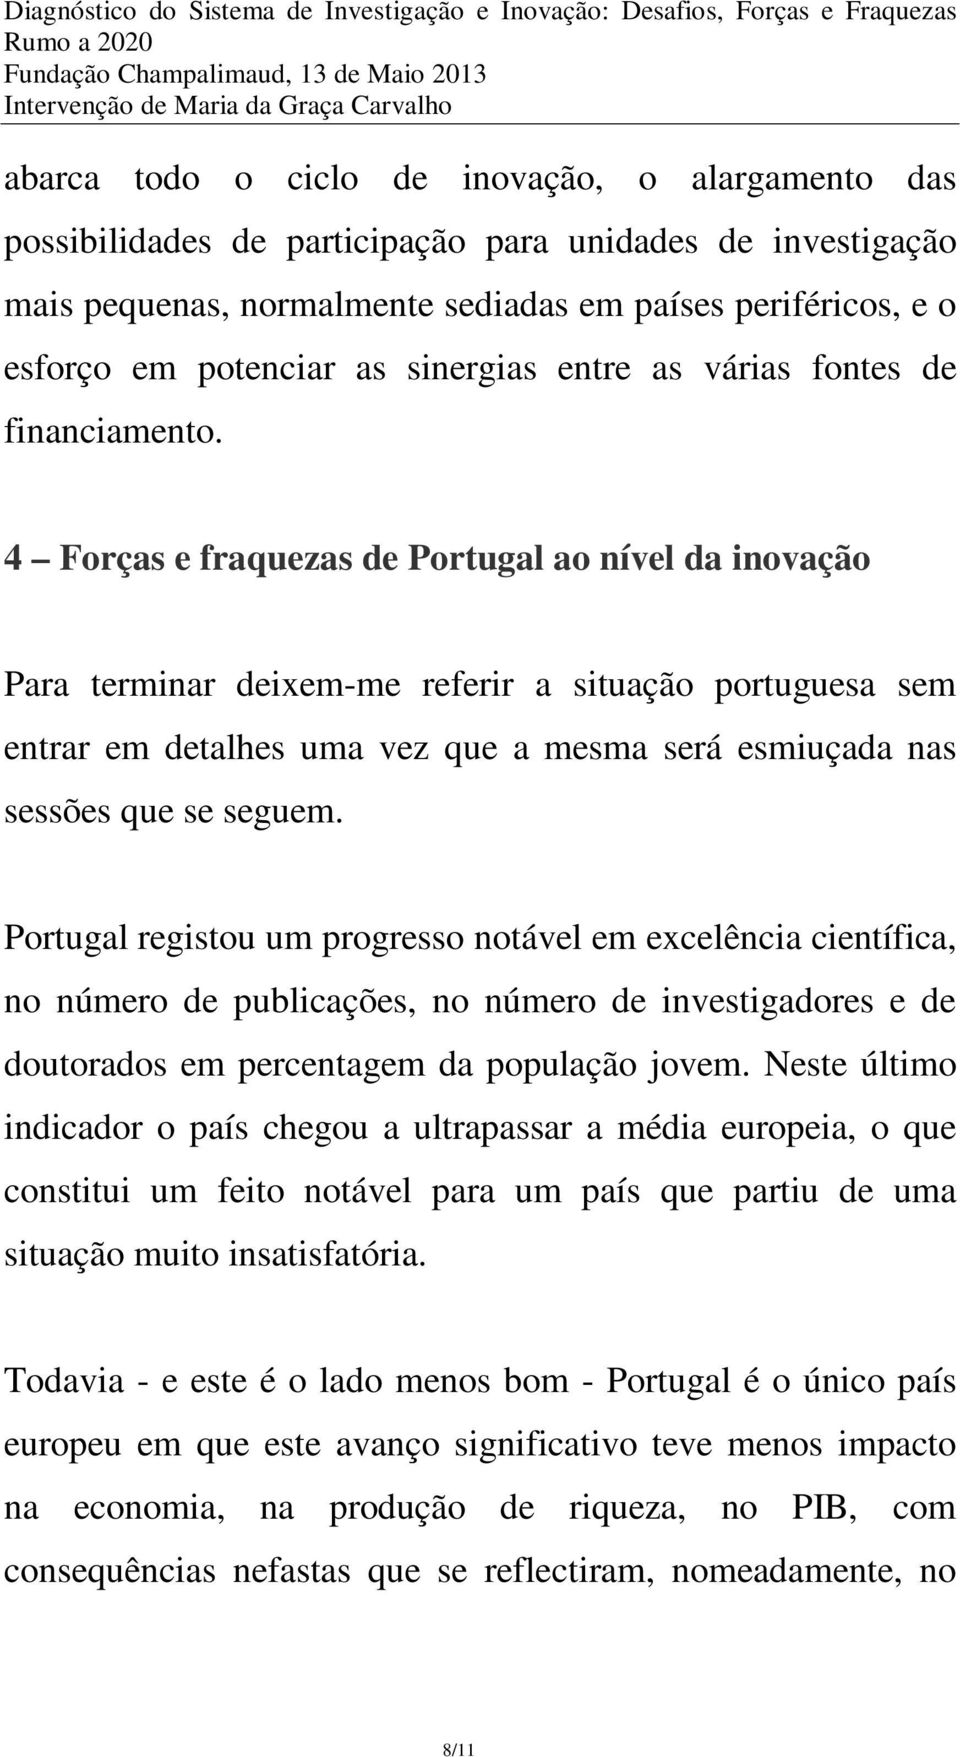 4 Forças e fraquezas de Portugal ao nível da inovação Para terminar deixem-me referir a situação portuguesa sem entrar em detalhes uma vez que a mesma será esmiuçada nas sessões que se seguem.